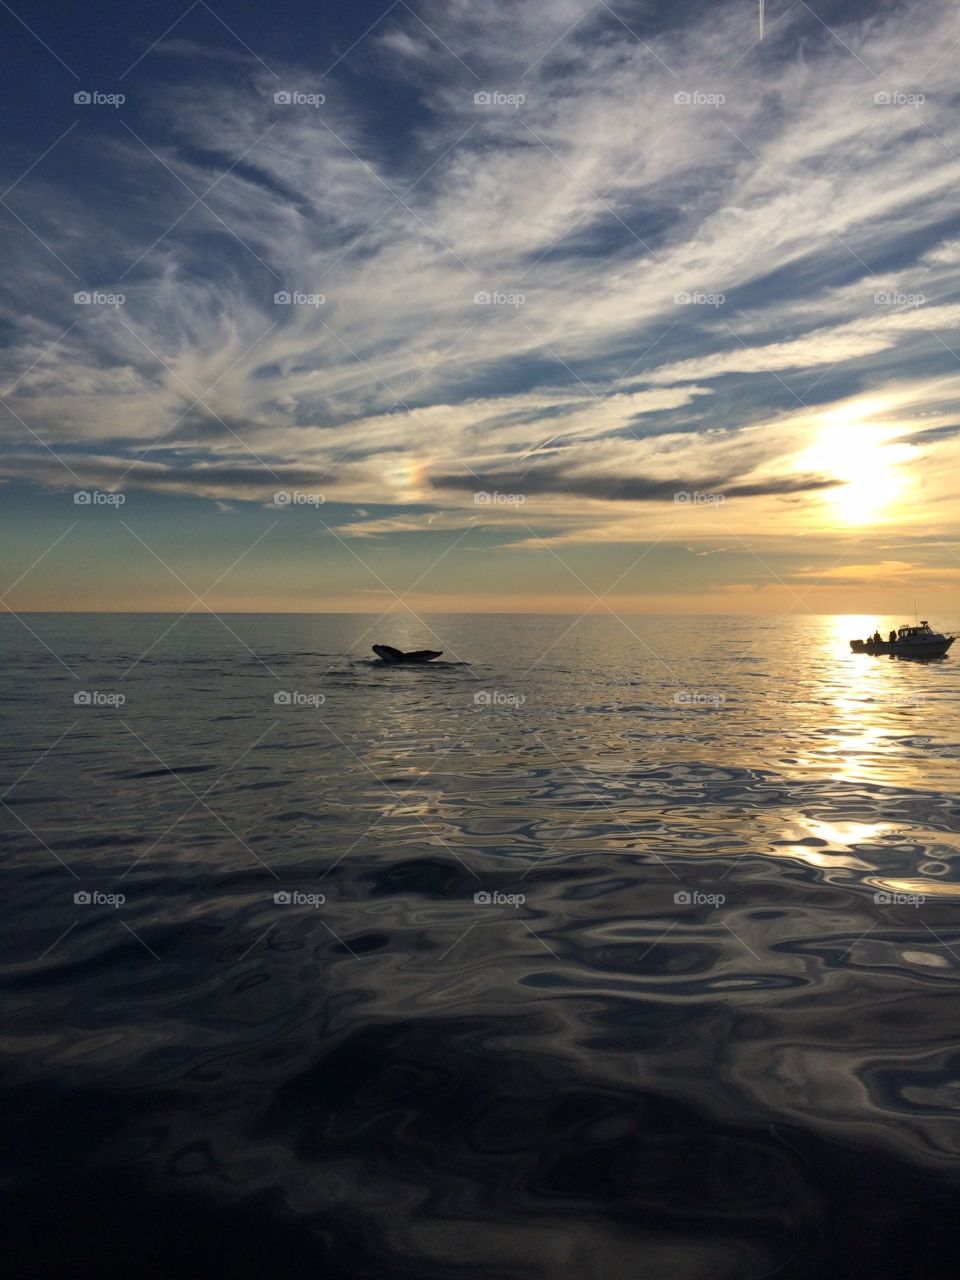 Cape cod whale watching. Cape cod whale watching